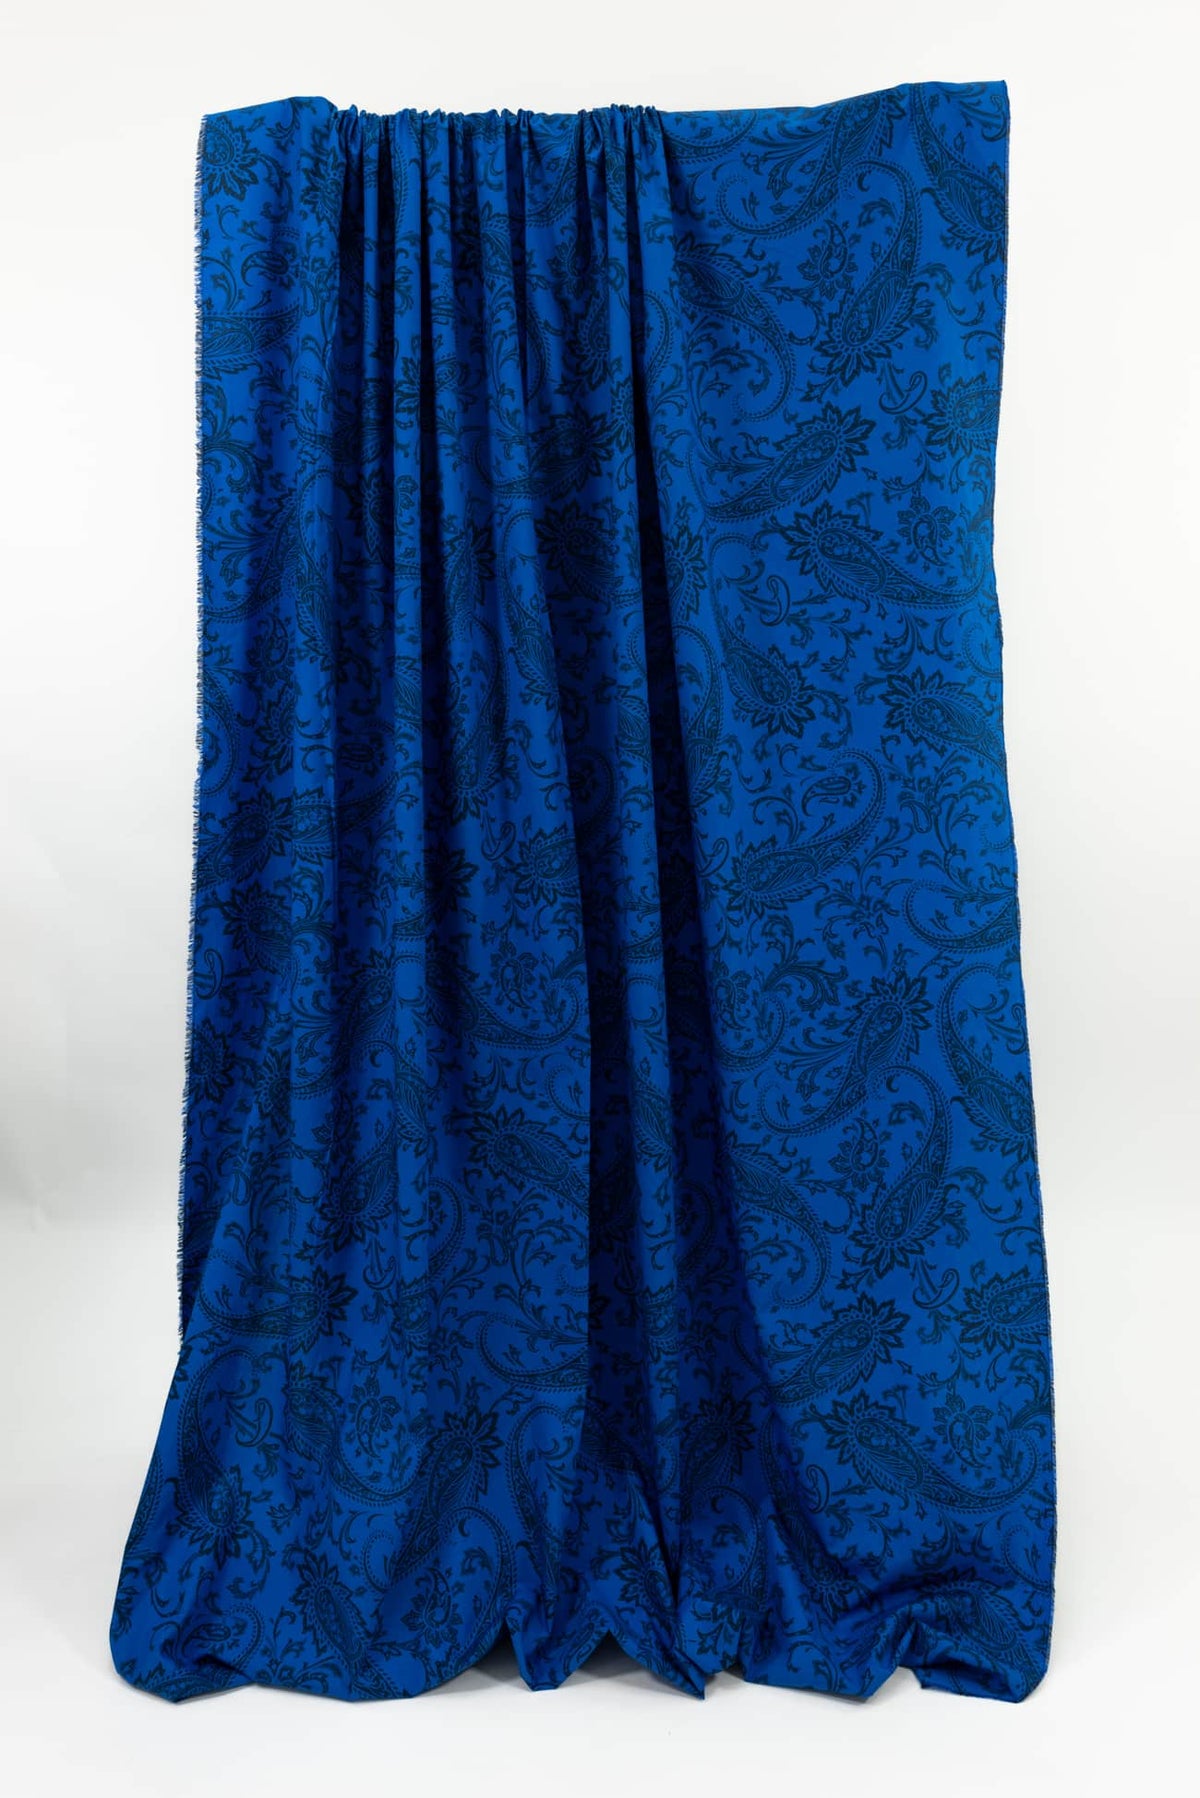 Blue Paisley Italian Cotton Woven - Marcy Tilton Fabrics